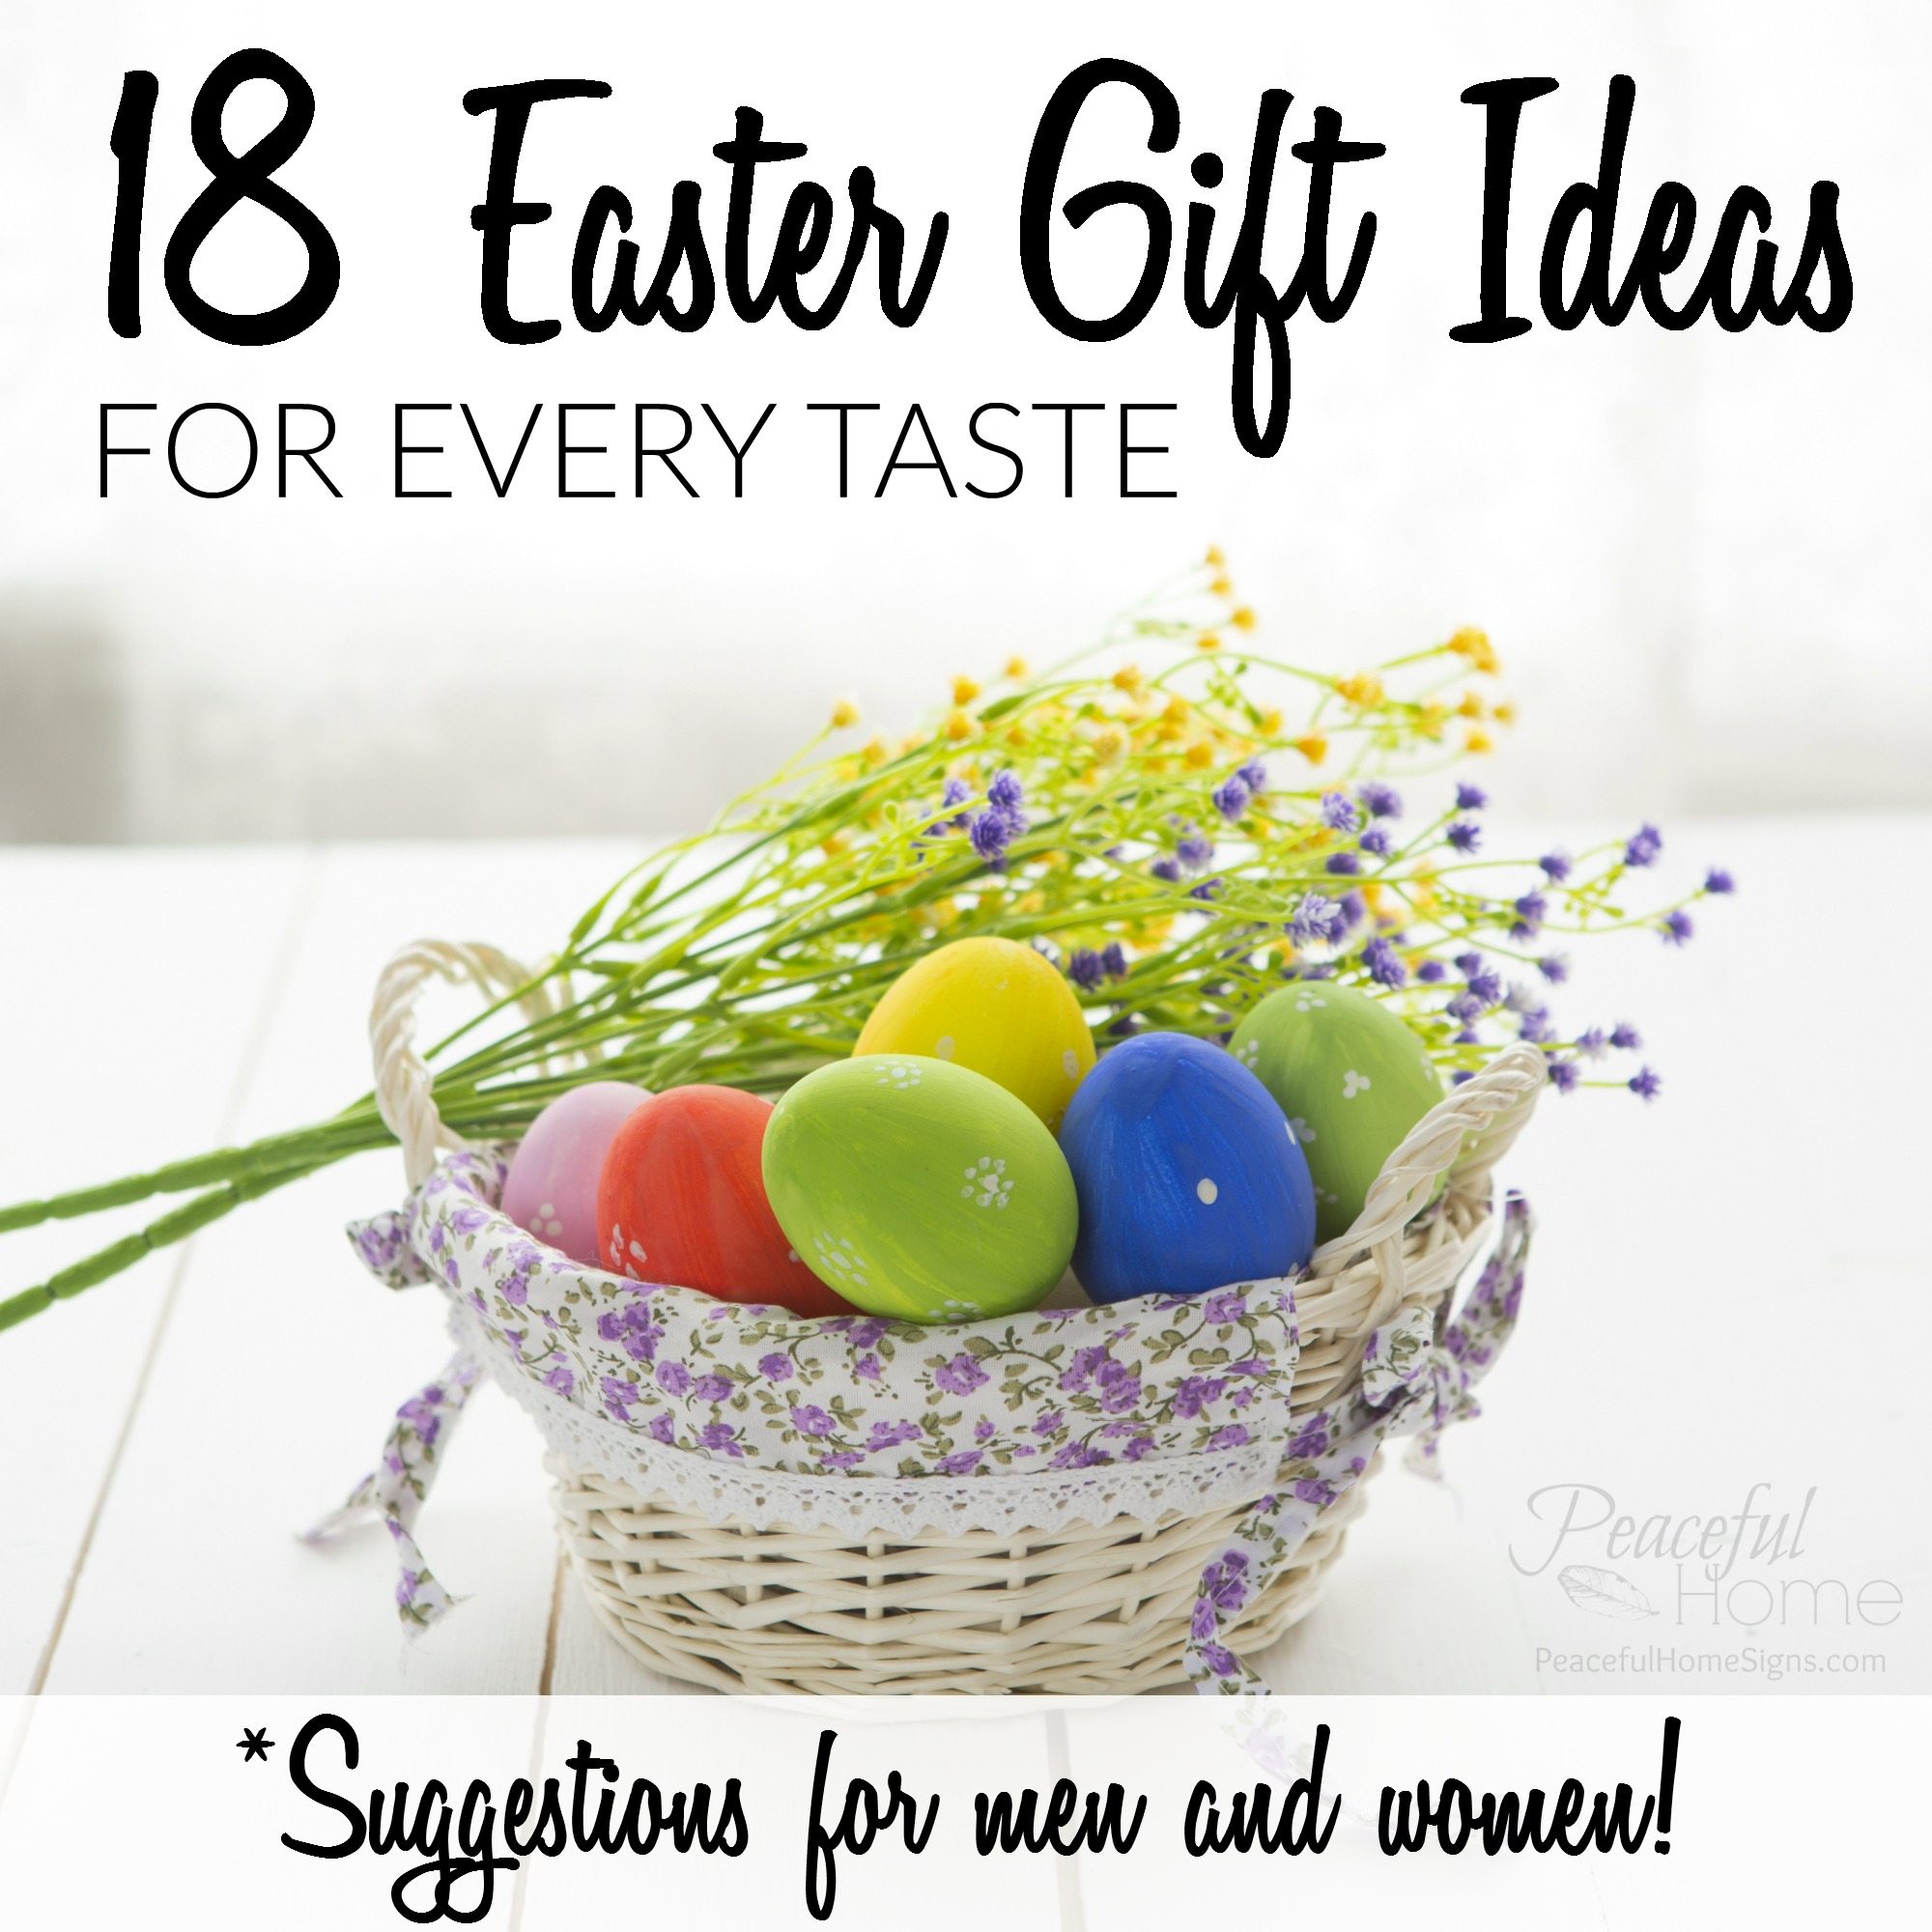 18 Easter Gift Ideas for Every Taste– Men & Women!